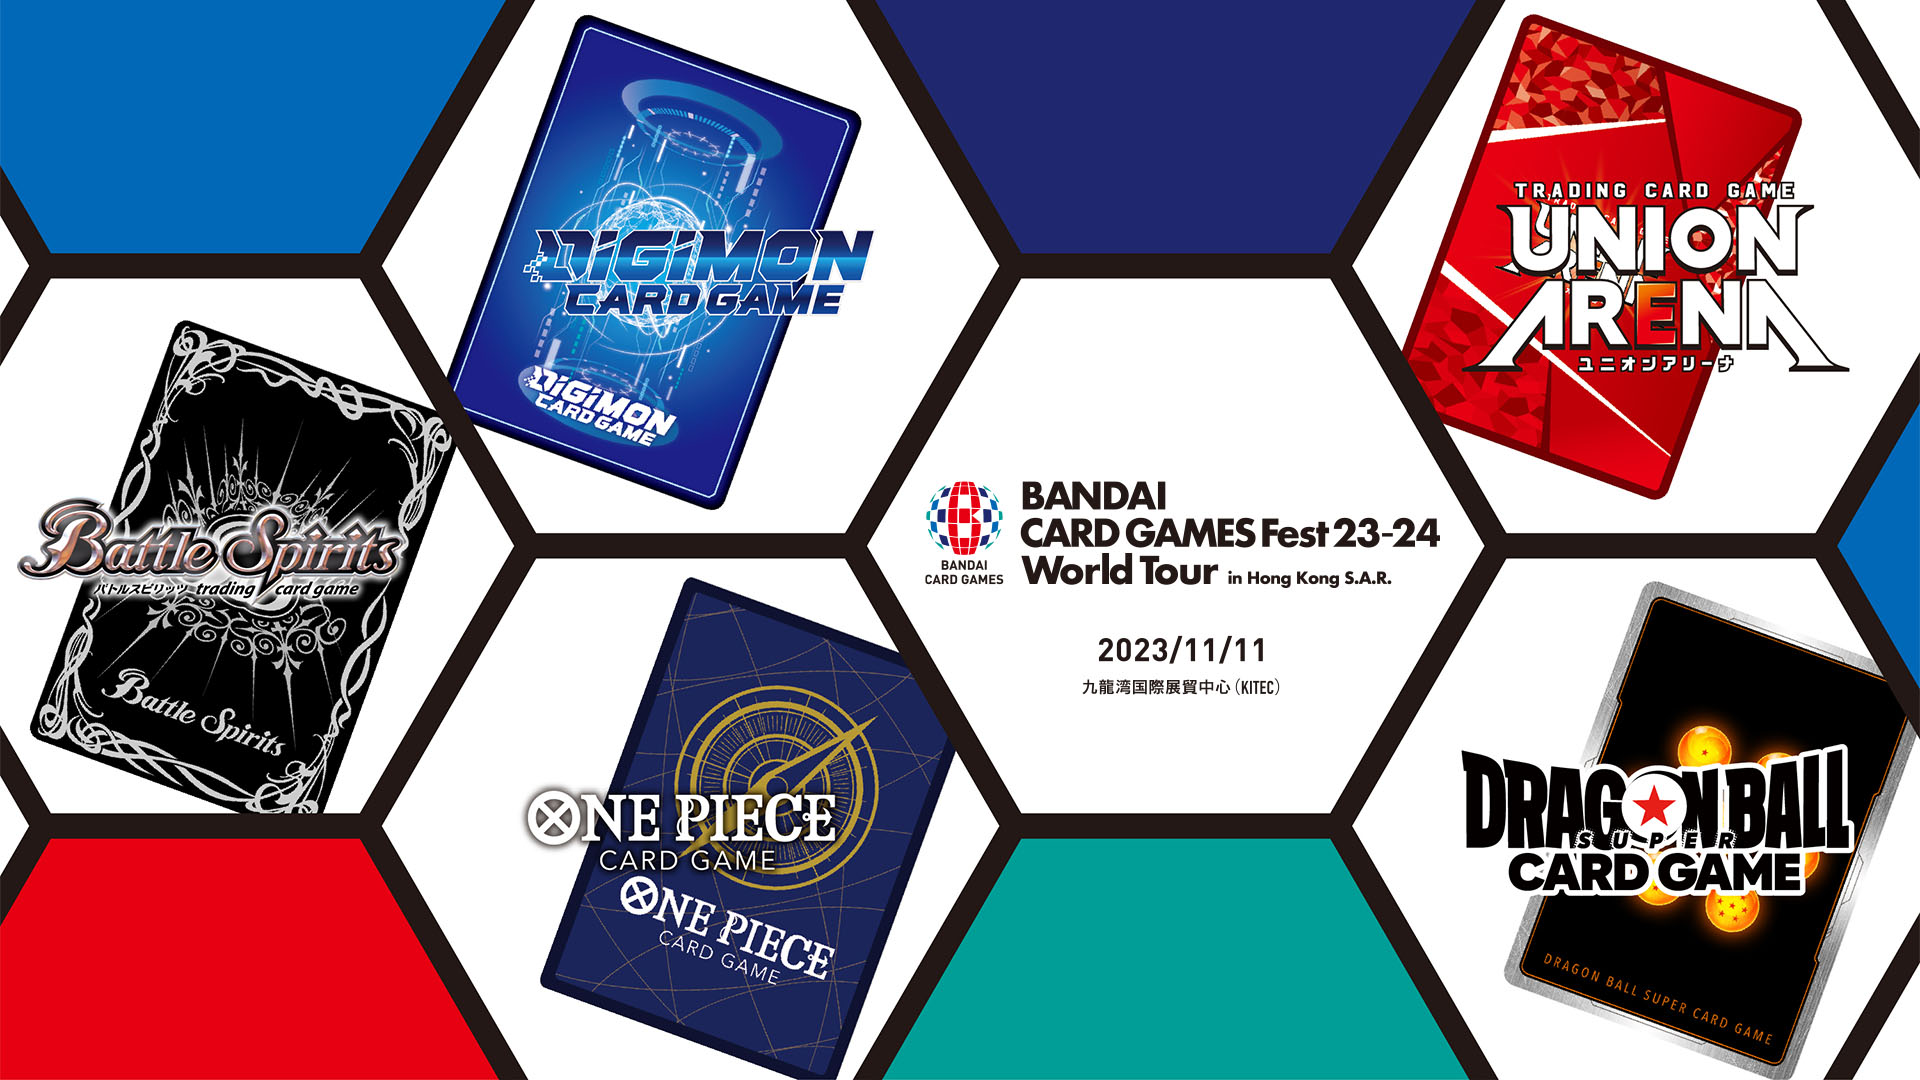 BANDAI CARD GAMES Fest23-24 World Tour in Hong Kong S.A.R.